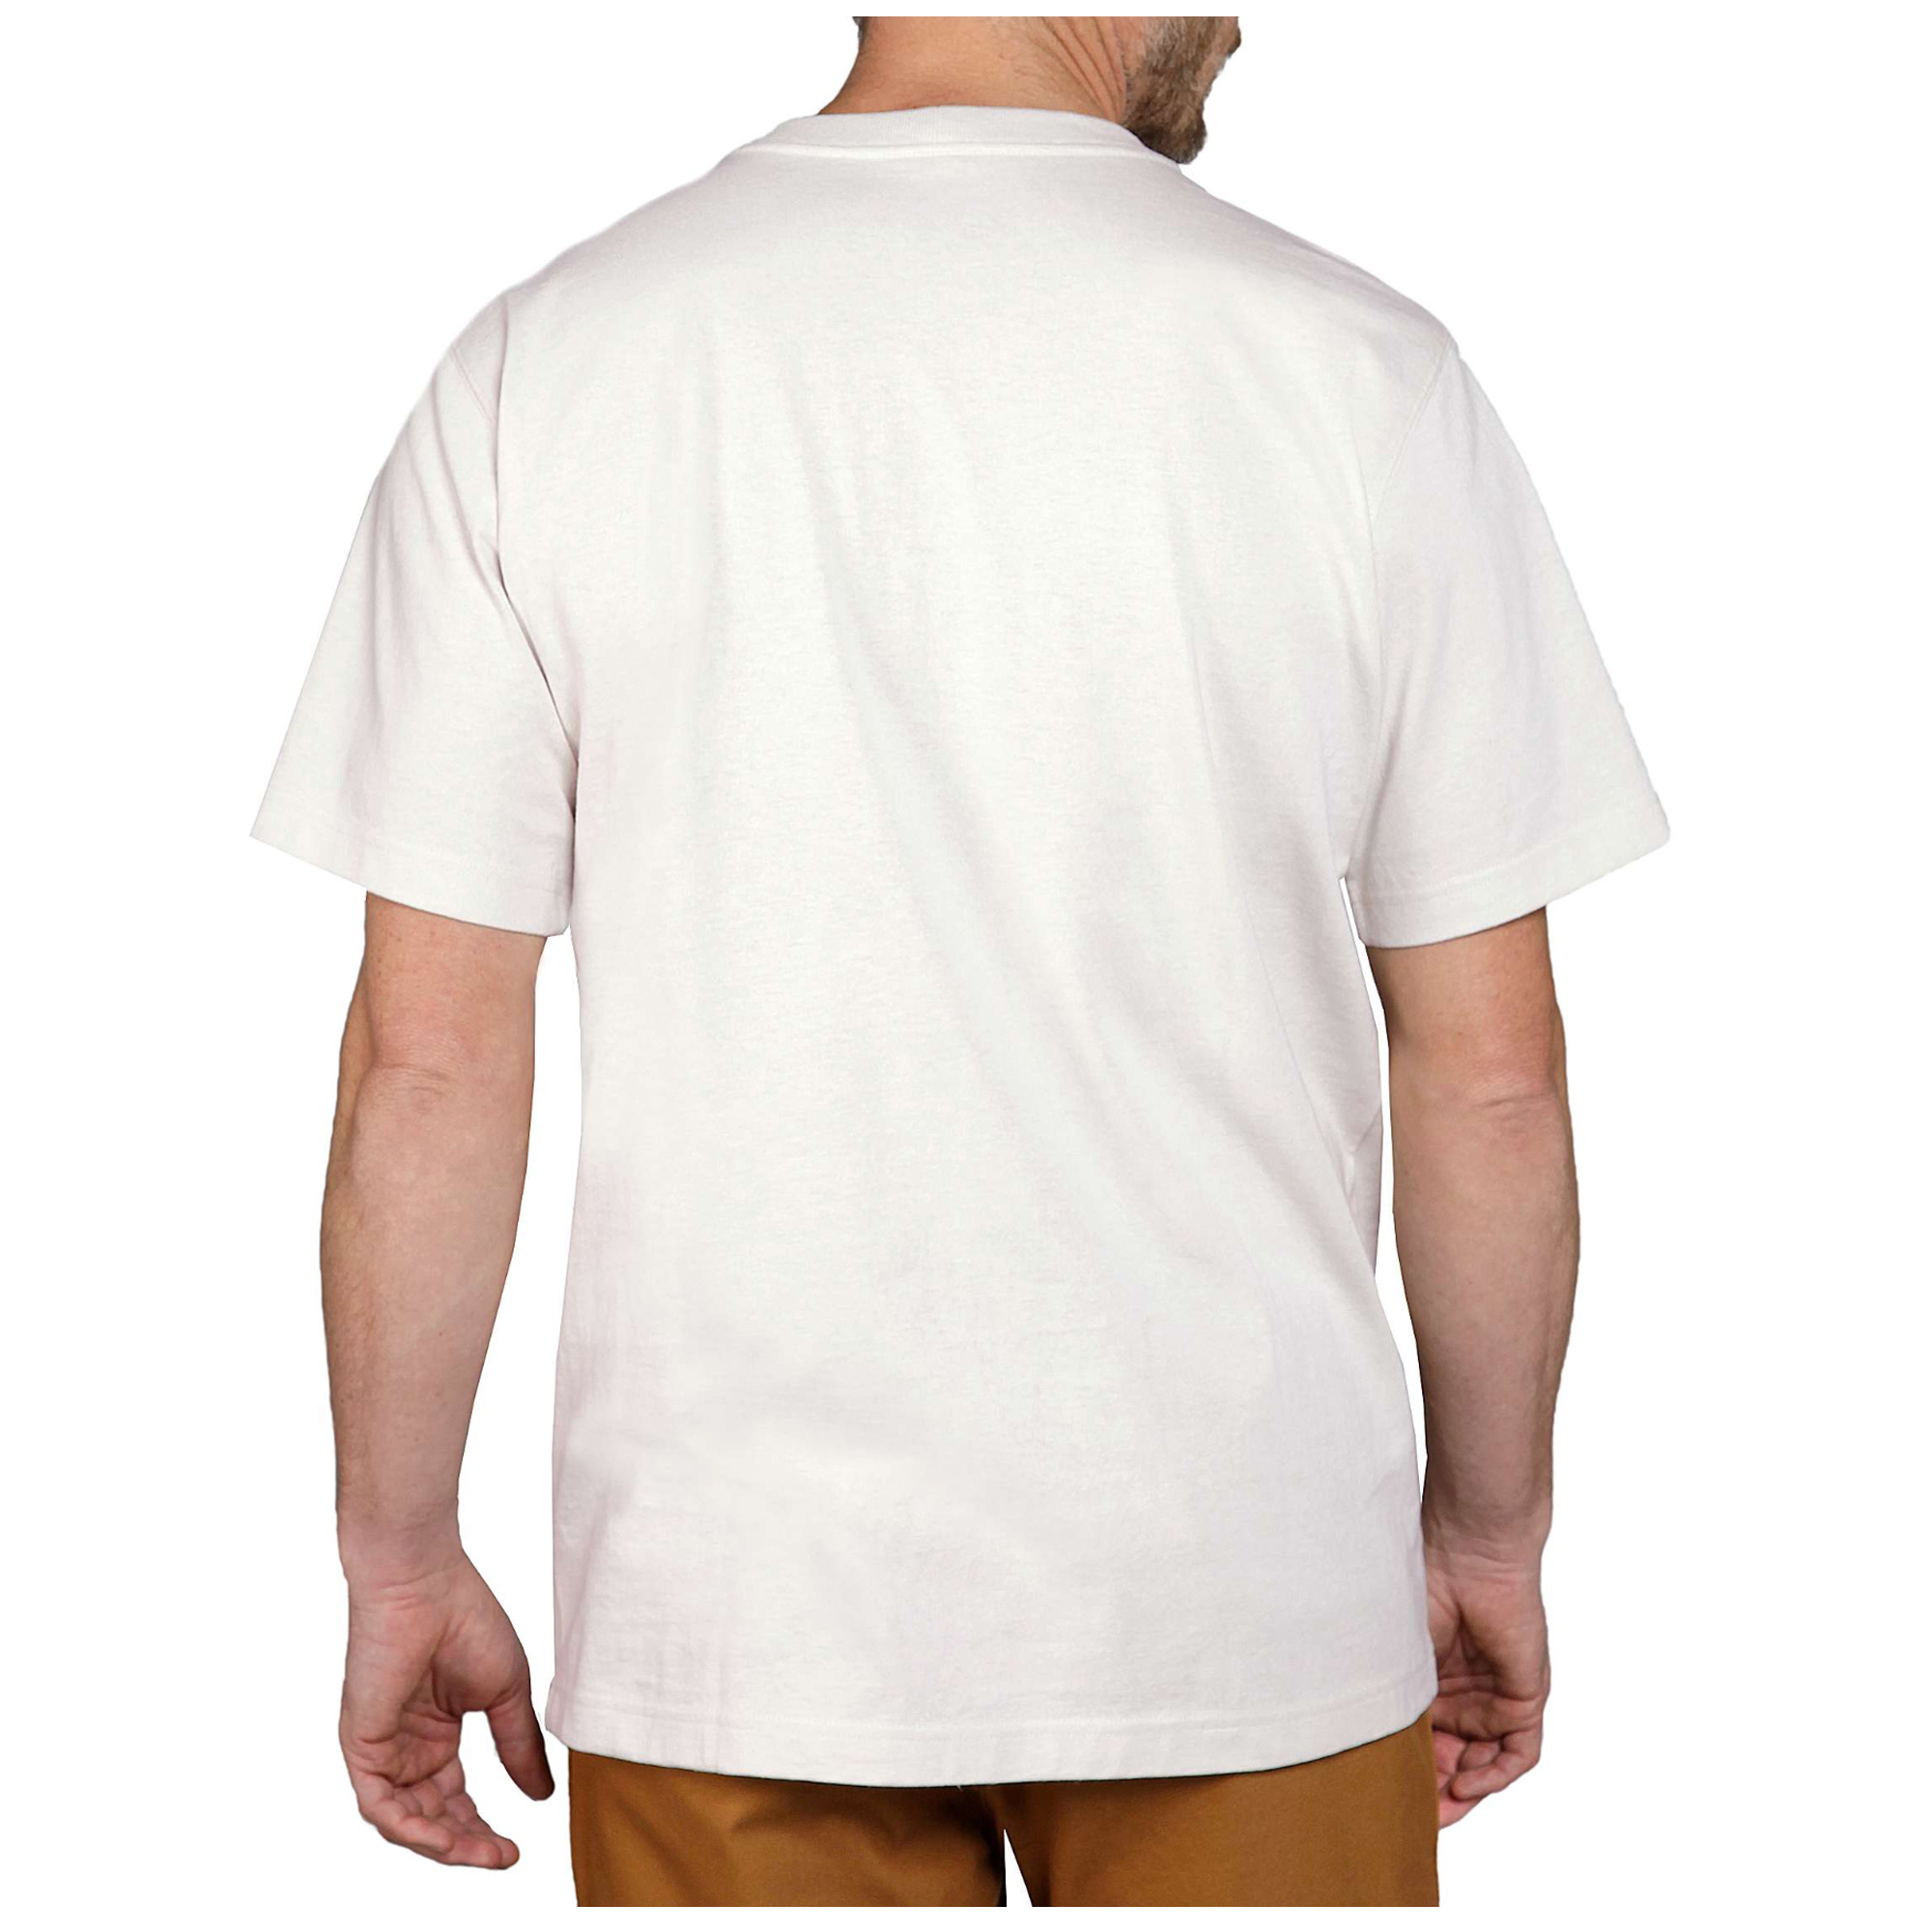 Carhartt Relaxed Fit Heavyweight S/S 'C' Graphic T-Shirt ecru (ABVERKAUF)